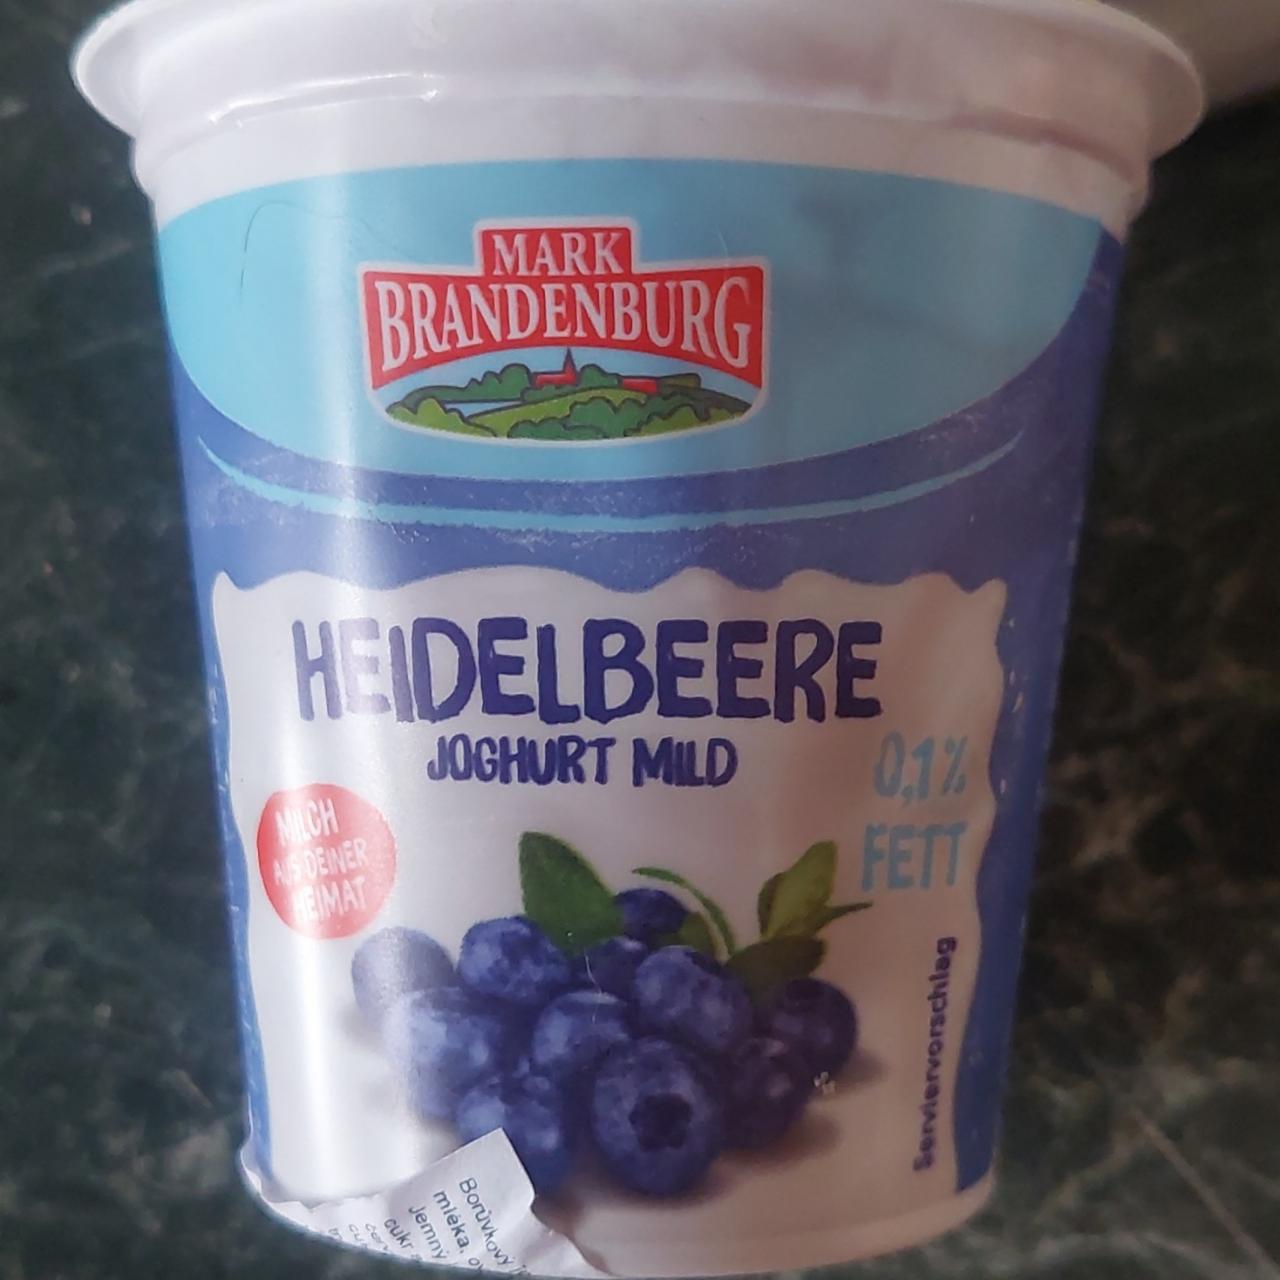 Fotografie - Heidelbeere joghurt mild 0.1% fett Mark Brandenburg